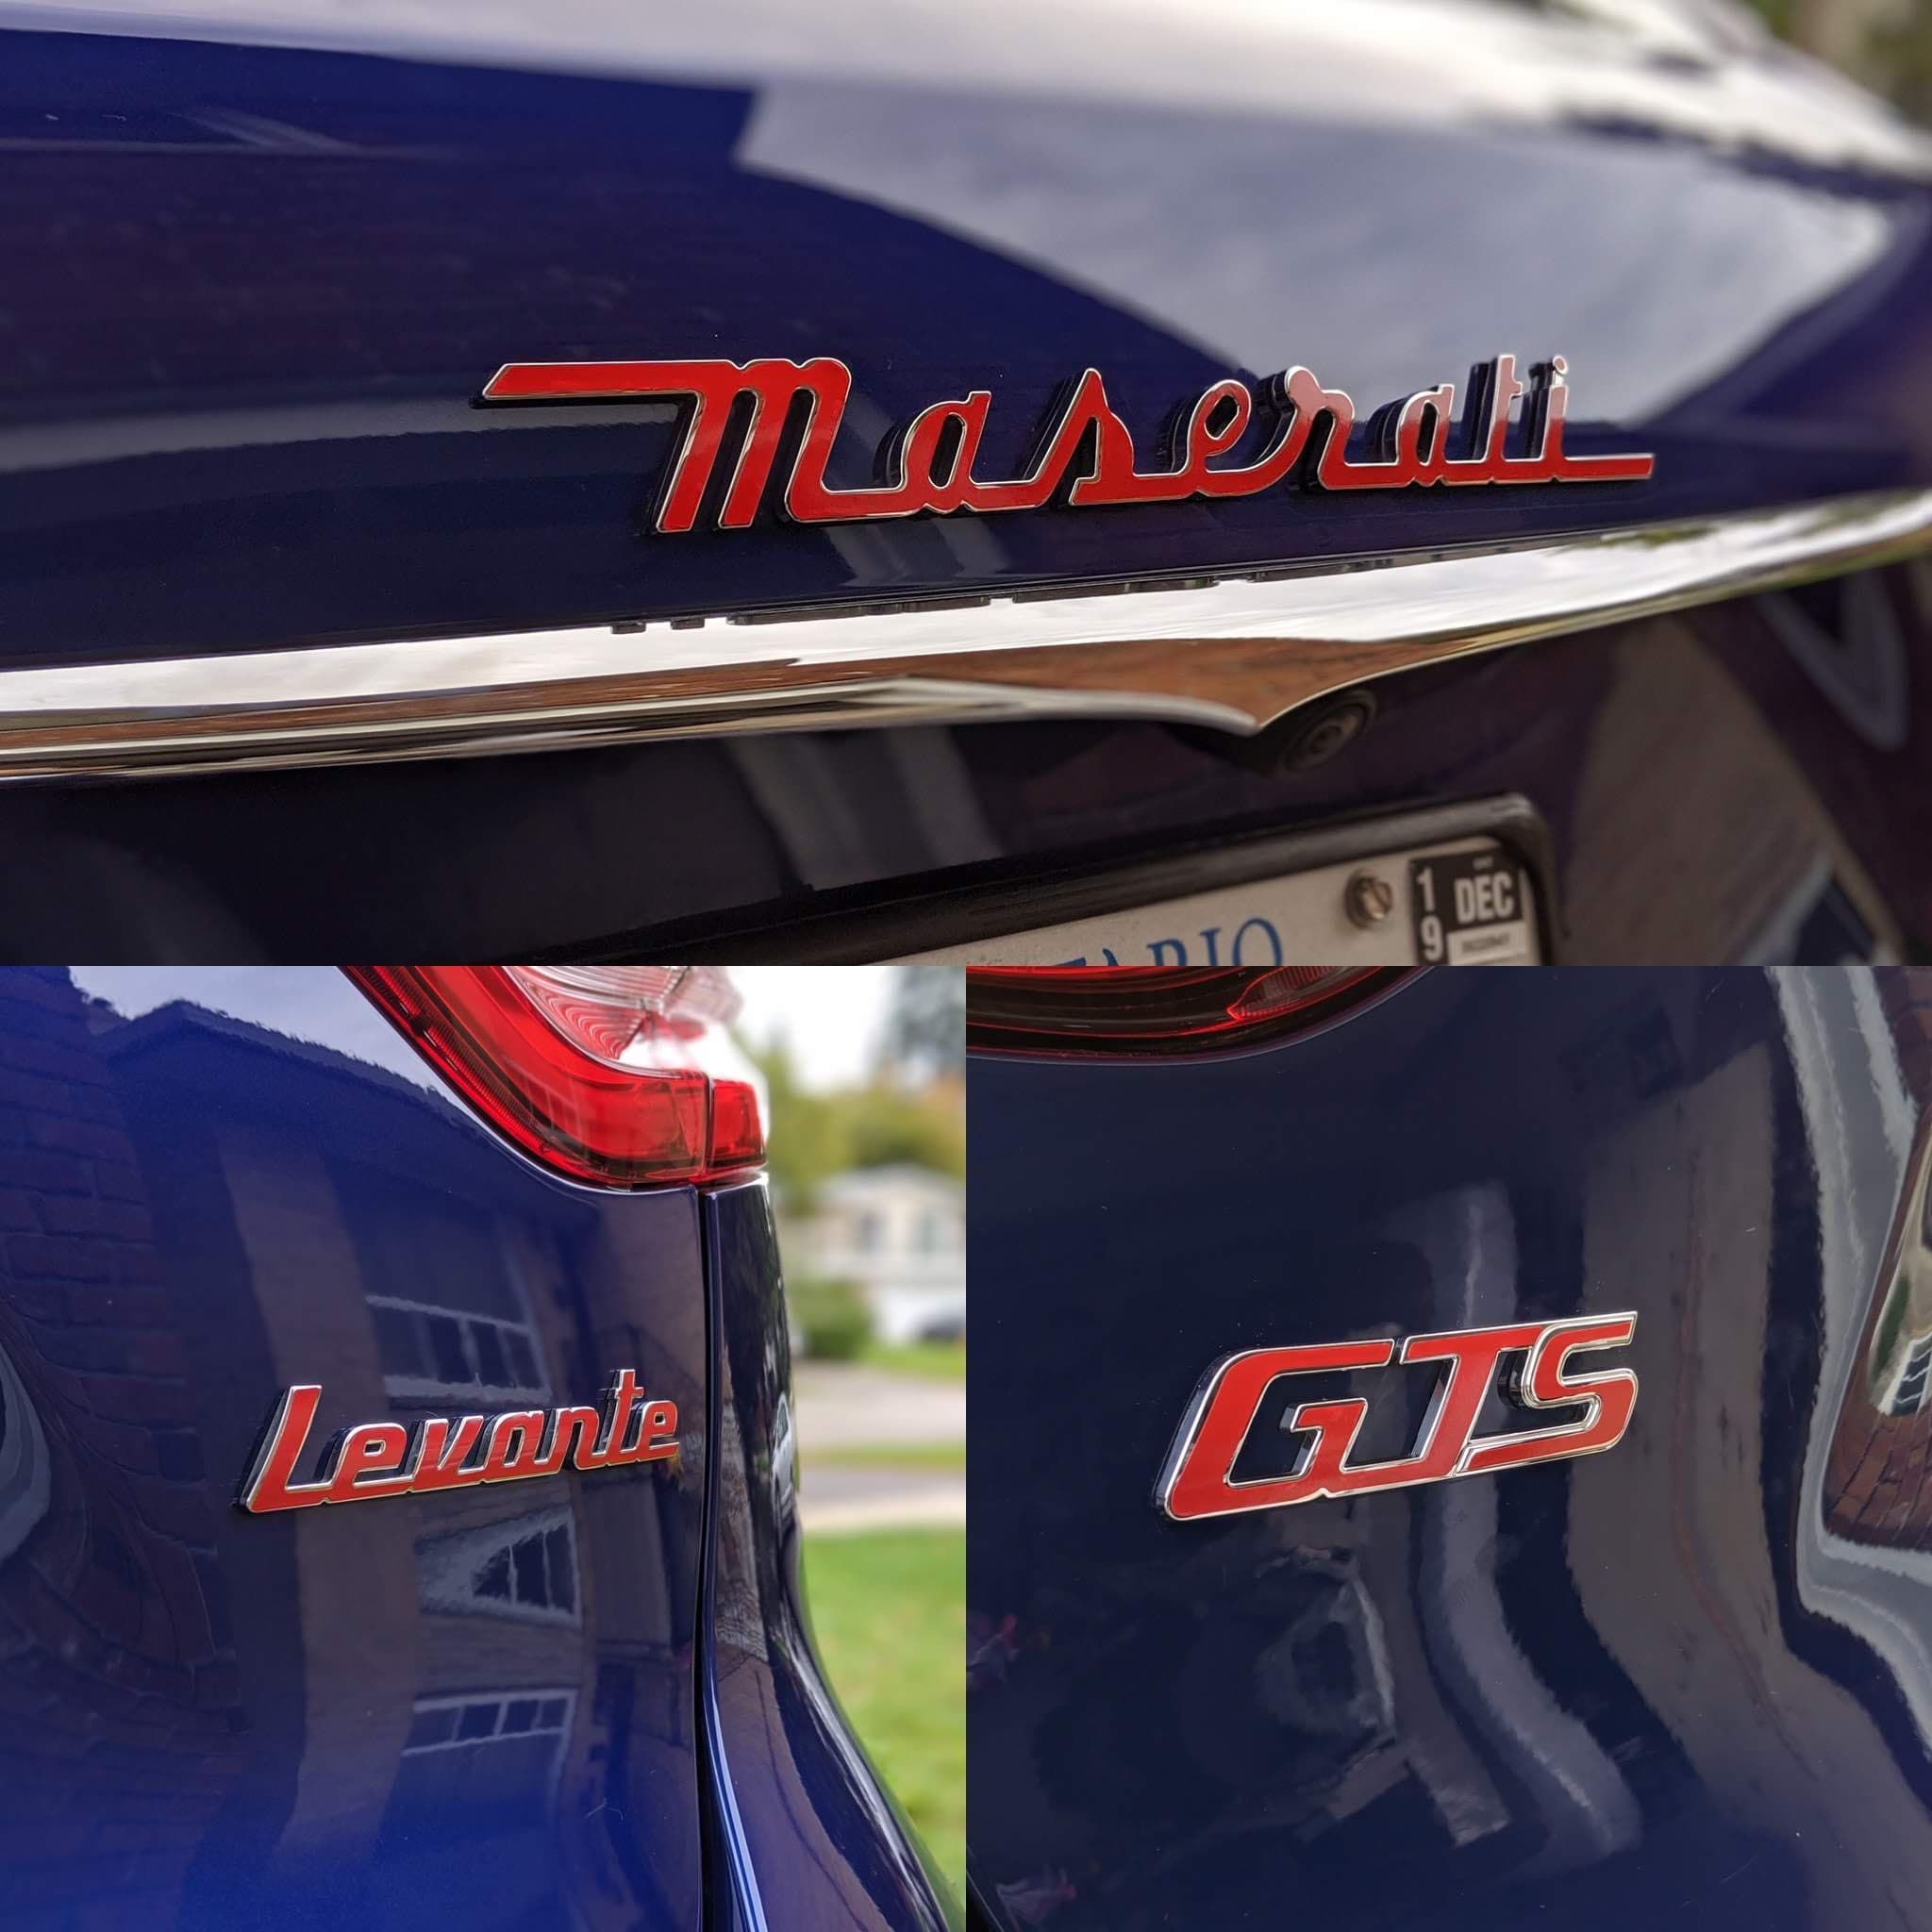 2017+ (1st Gen) Maserati Levante - Rear Maserati, Levante, and GTS Combo